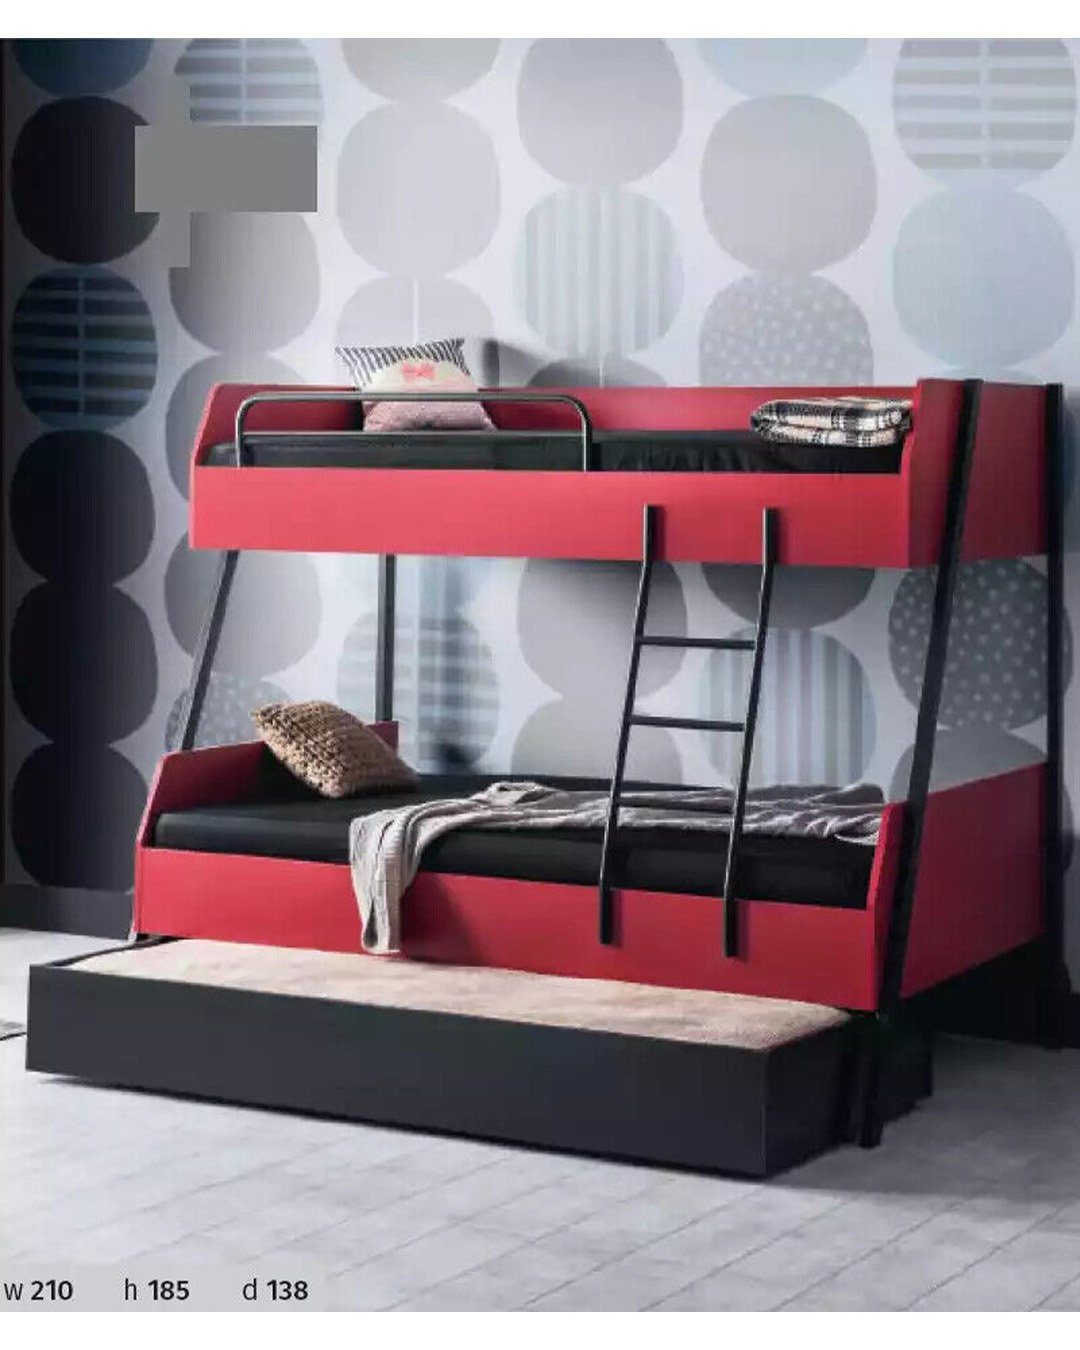 JVmoebel Etagenbett, Jugendbett Bett Design Holz Modern Kinderbett Betten Kids Kinderzimmer